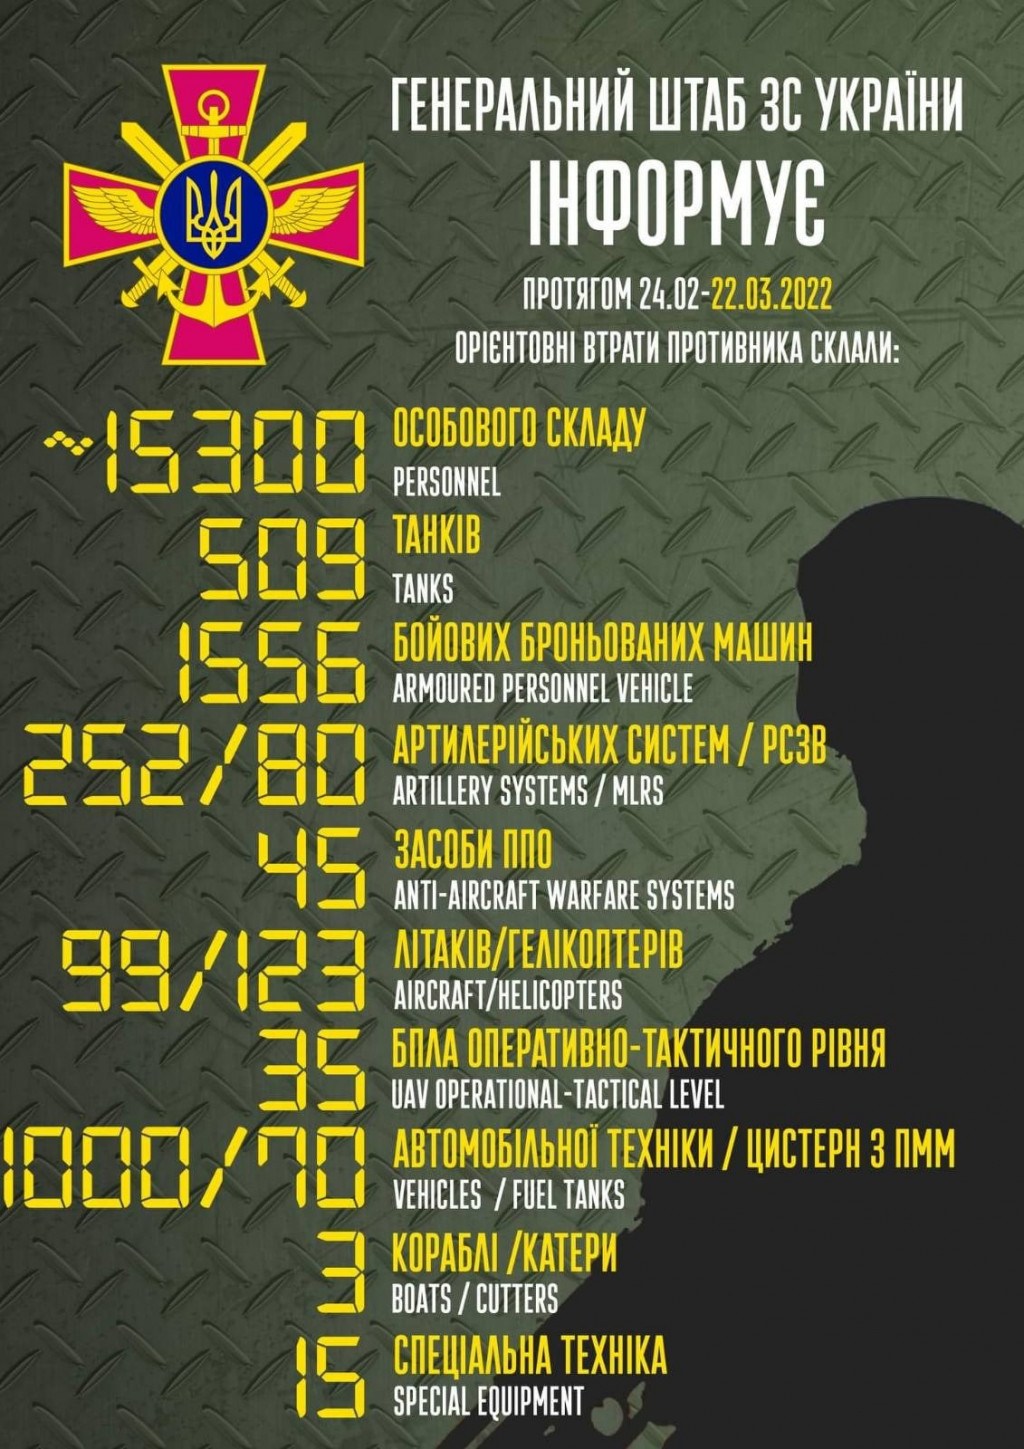 В Україні московити втратили понад 15 тисяч вояків, більше 500 танків та тисячу машин, - Генштаб ЗСУ